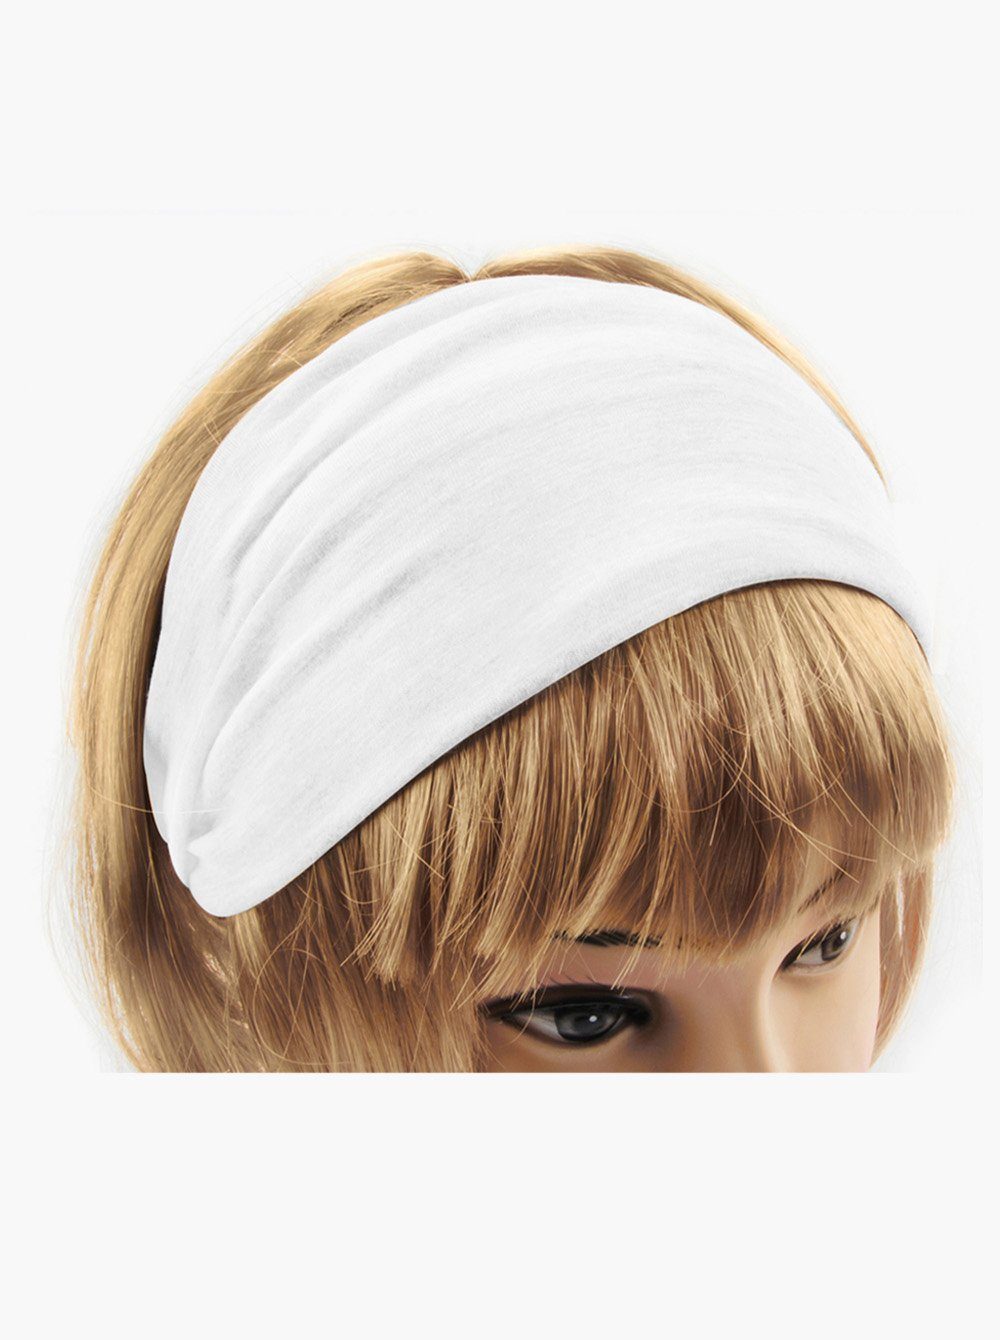 axy Haarband Damen Haarband Hairband und für Sport Yoga Stirnband Kopfband, Weiss